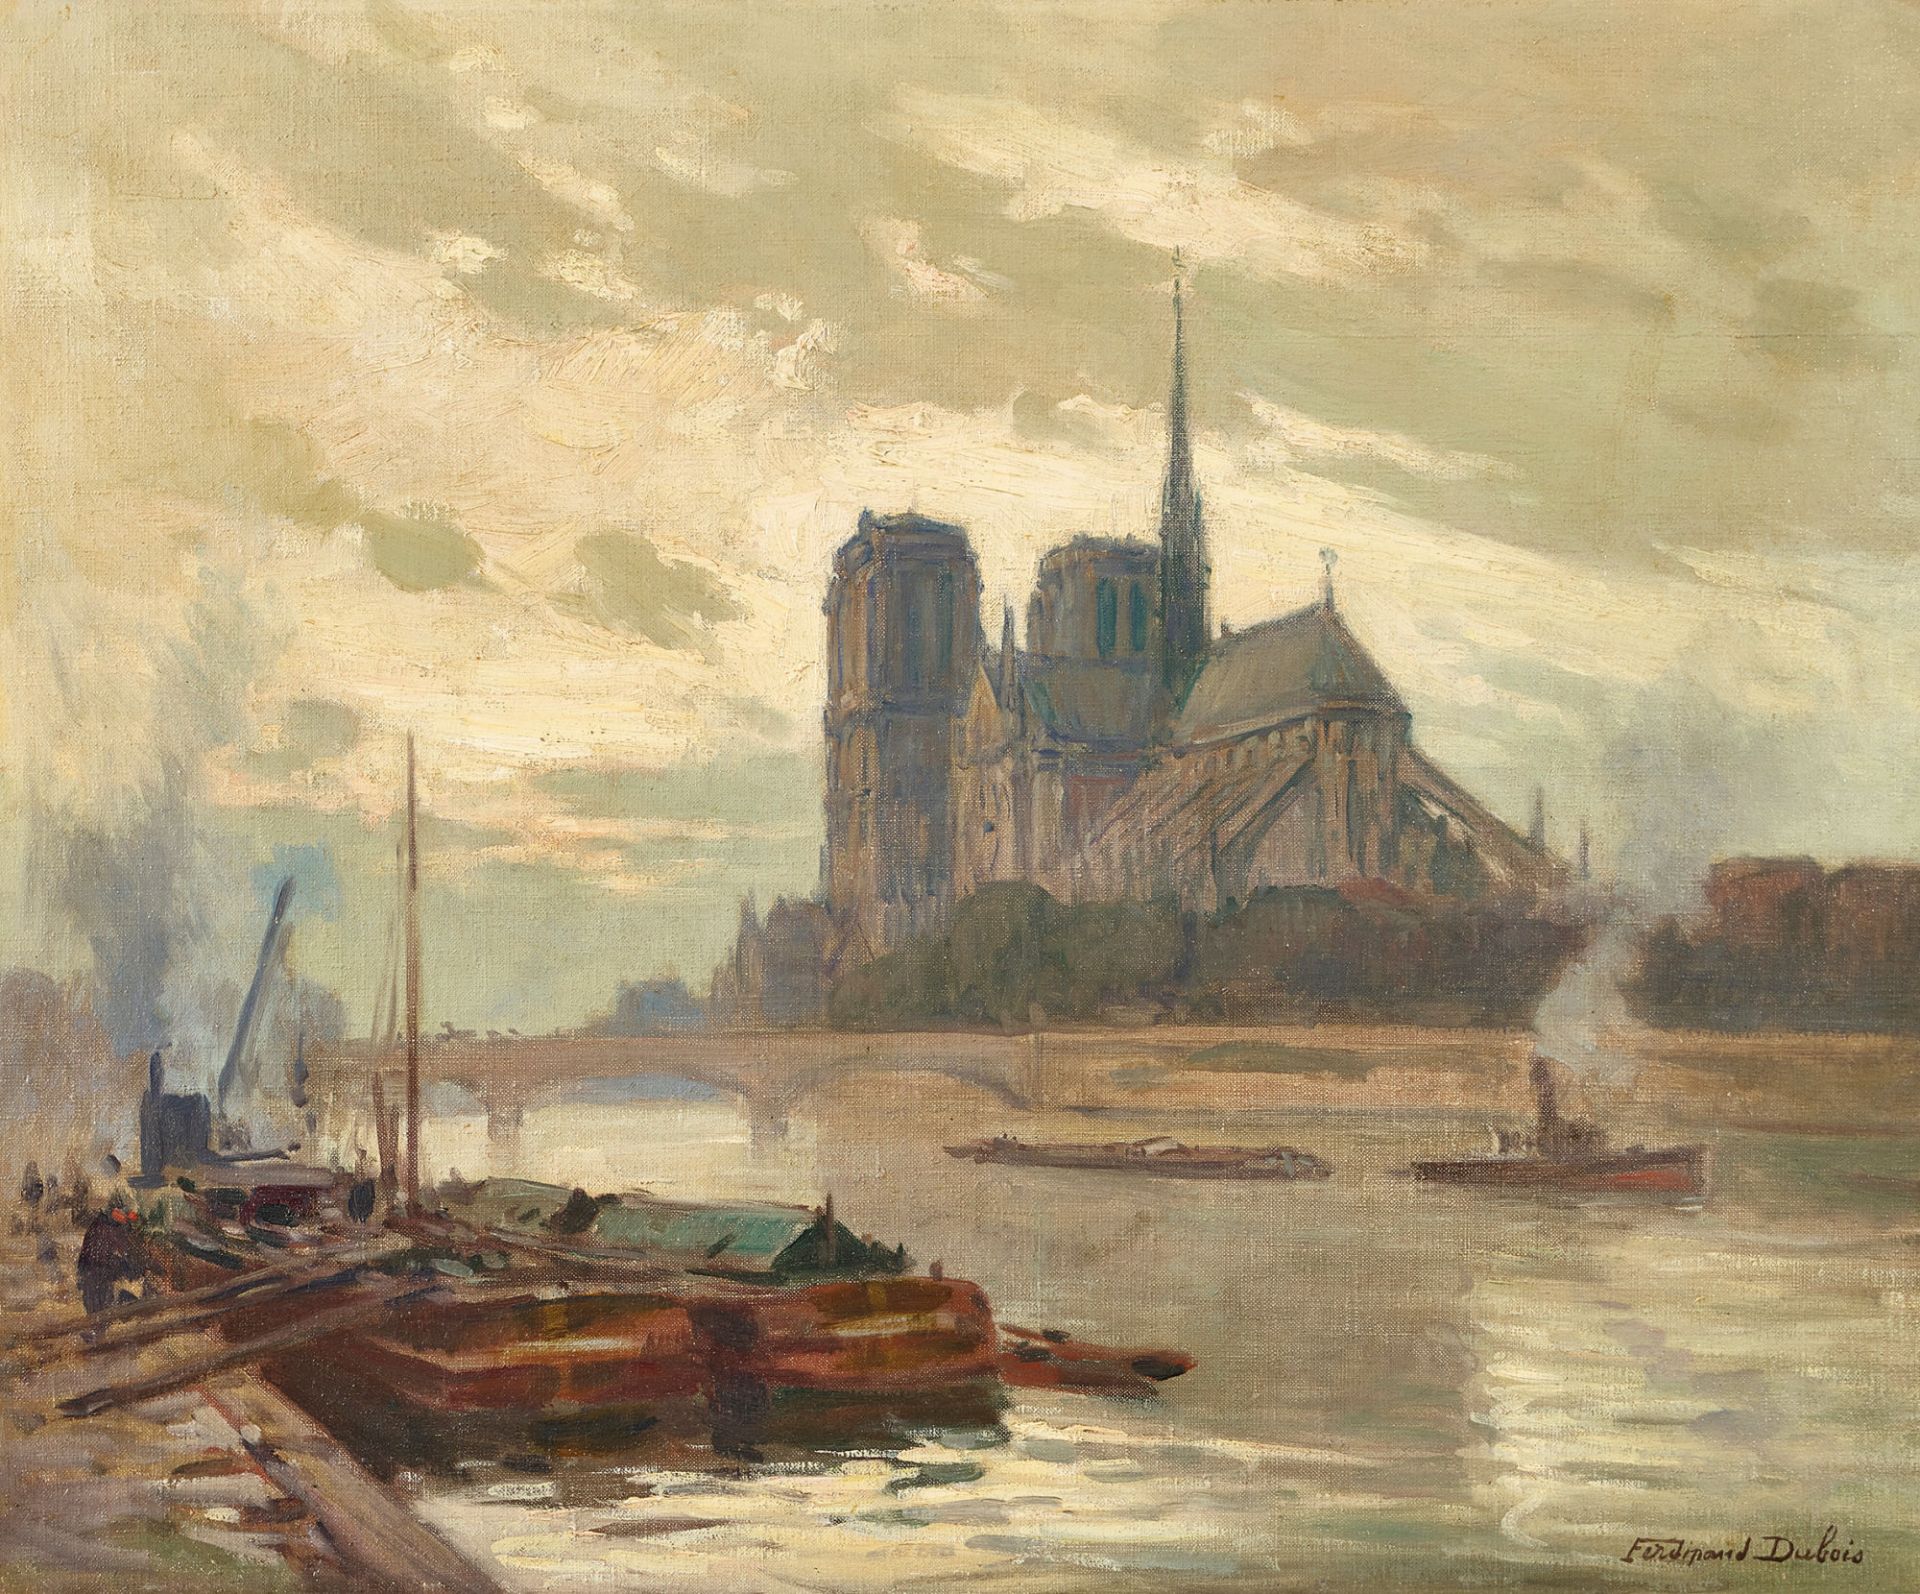 DUBOIS, FERDINAND: La Seine et Notre-Dame de Paris.